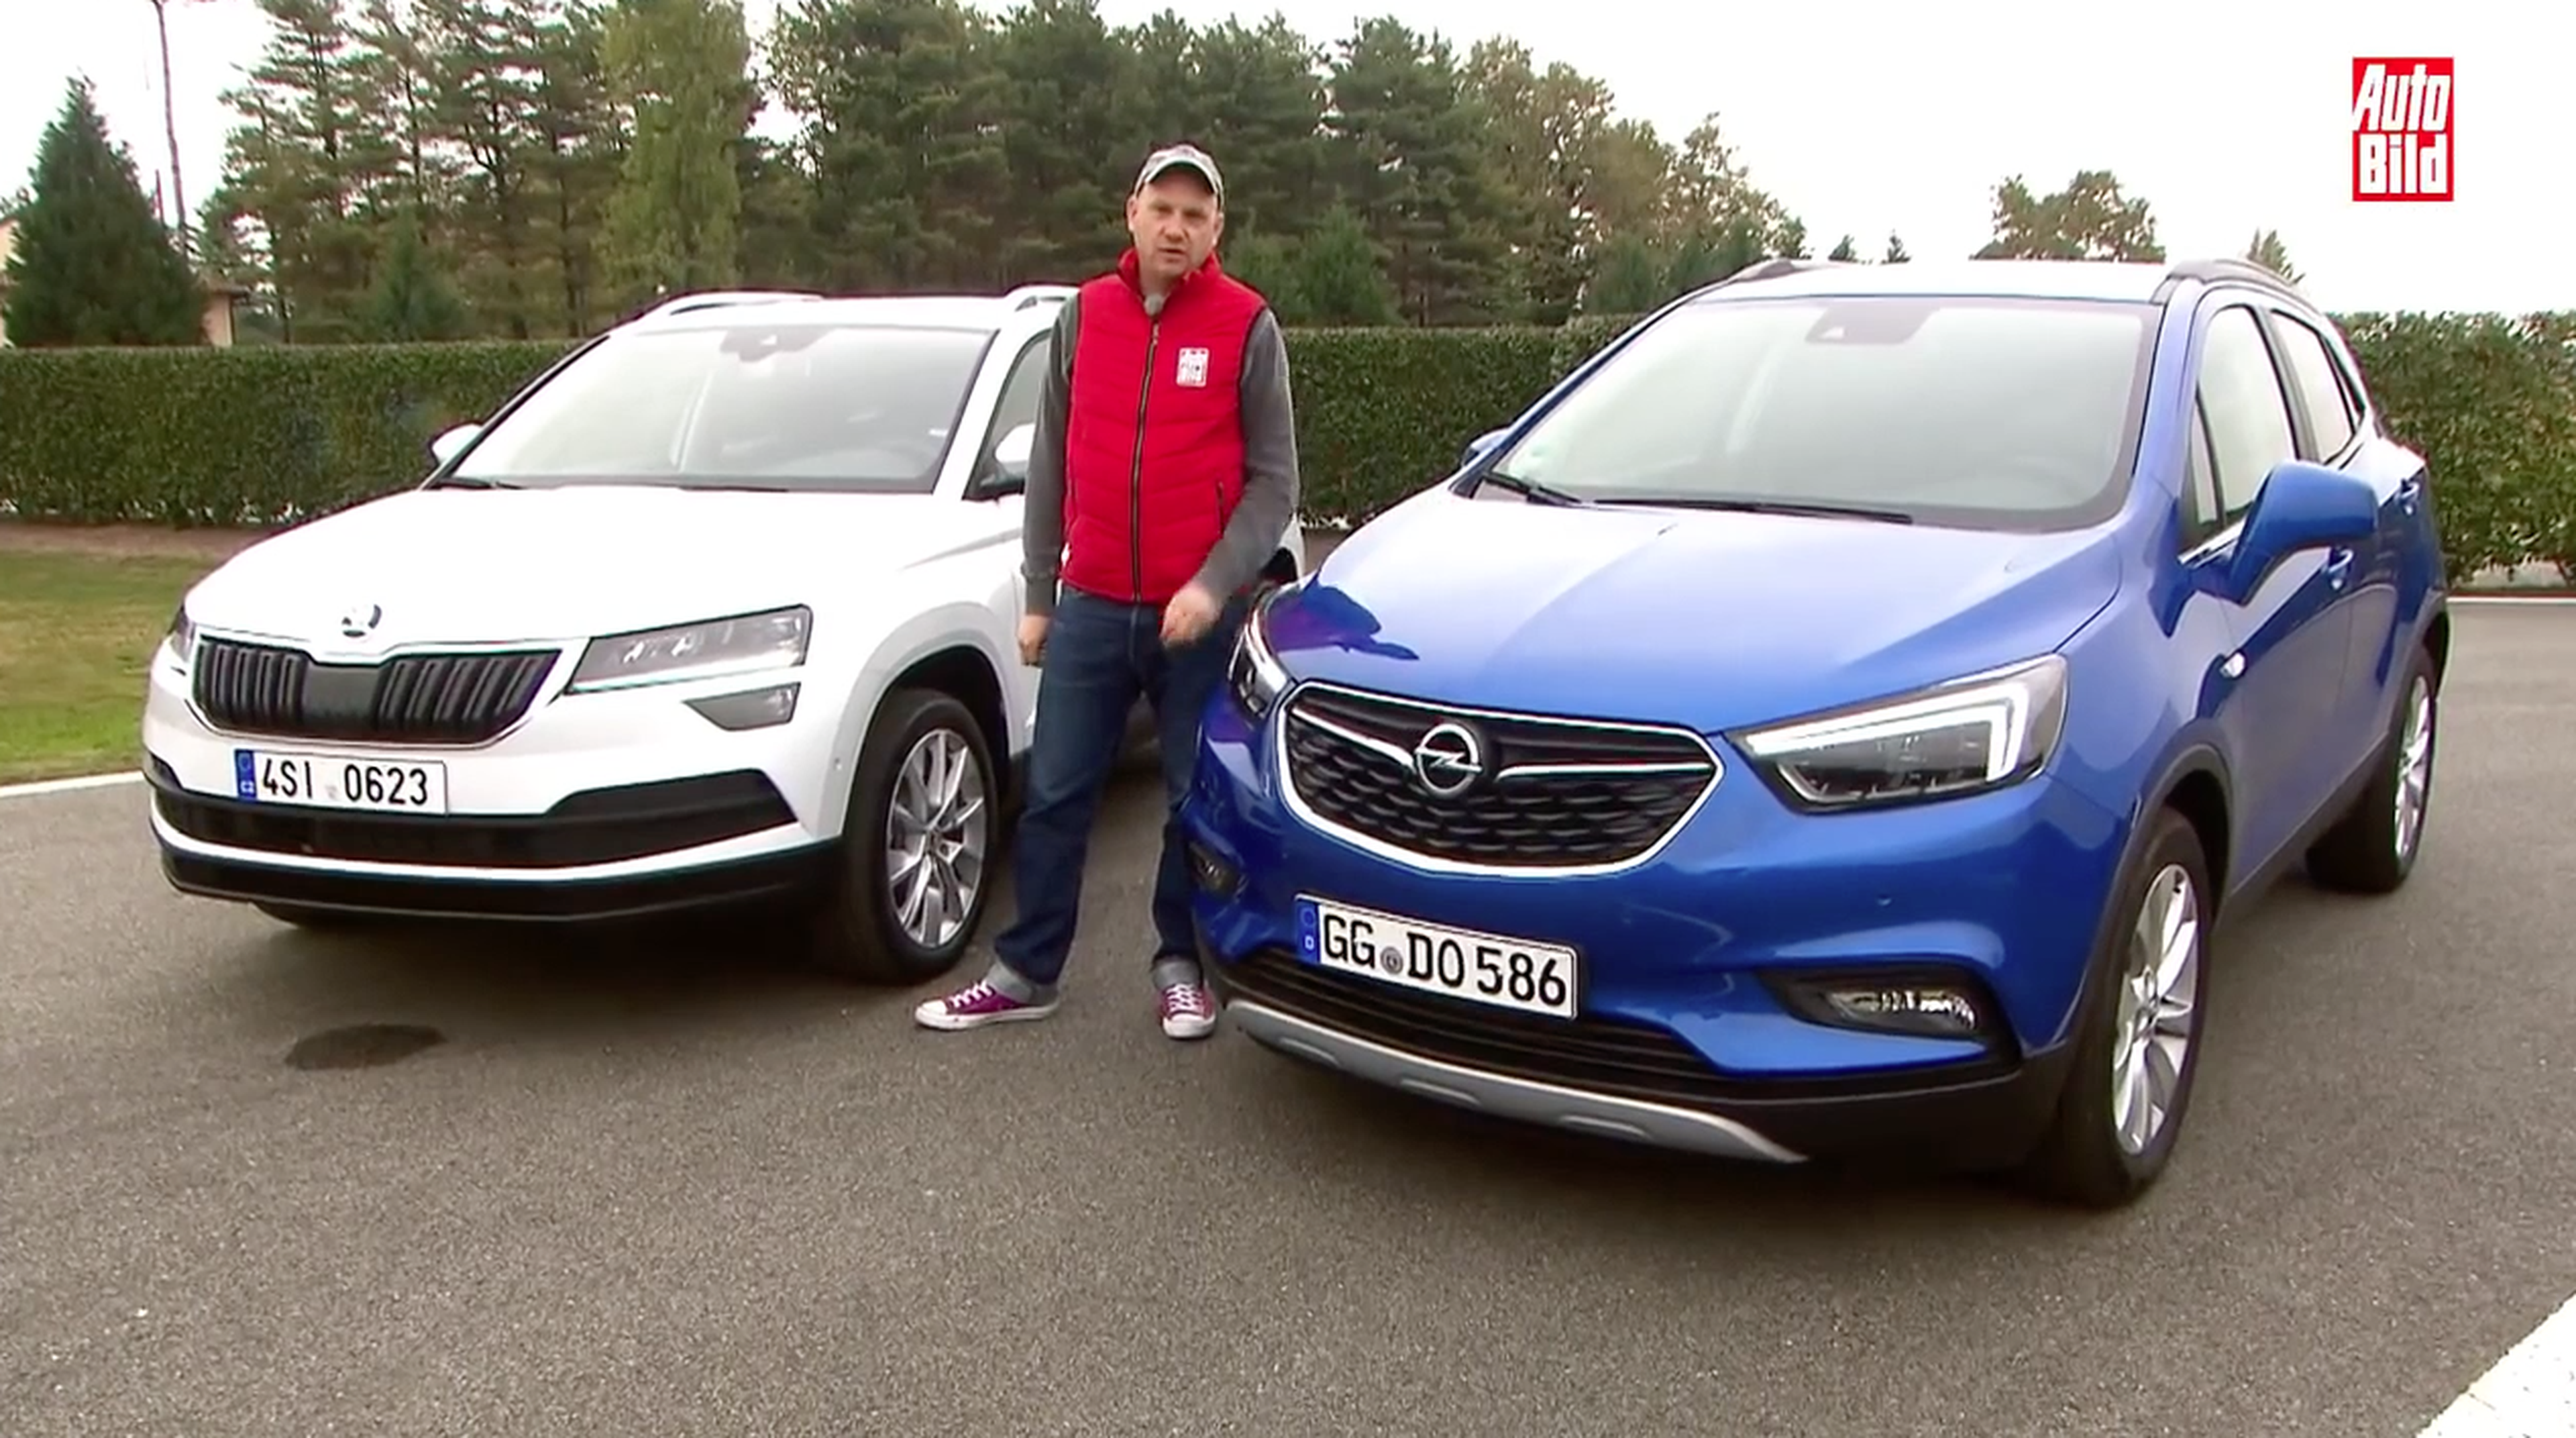 Comparativa en vídeo: Skoda Karoq contra Opel Mokka X